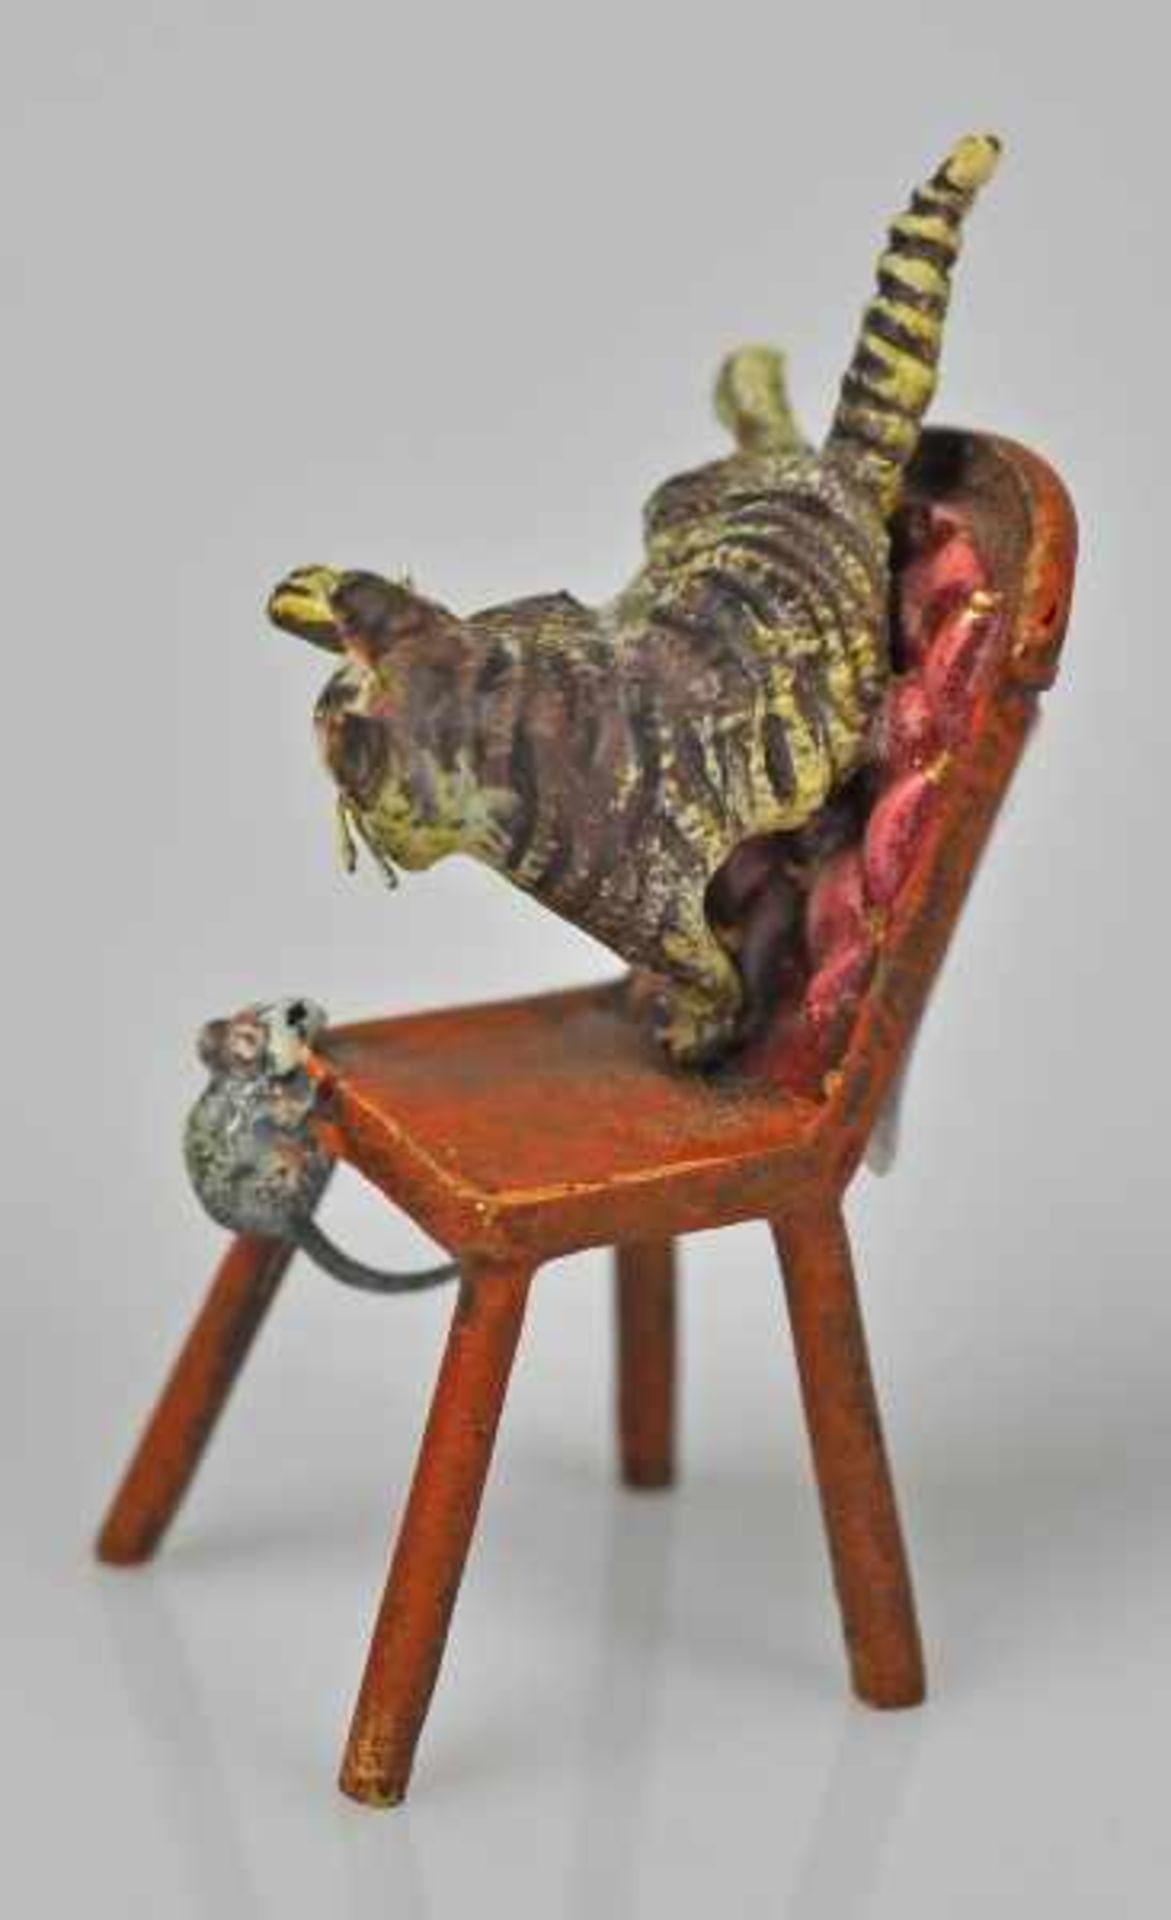 KATZE eine Maus jagend, auf Stuhl, Wiener Bronze, gemarkt u. bez. Bermann Wien, H 5cm - Bild 2 aus 3